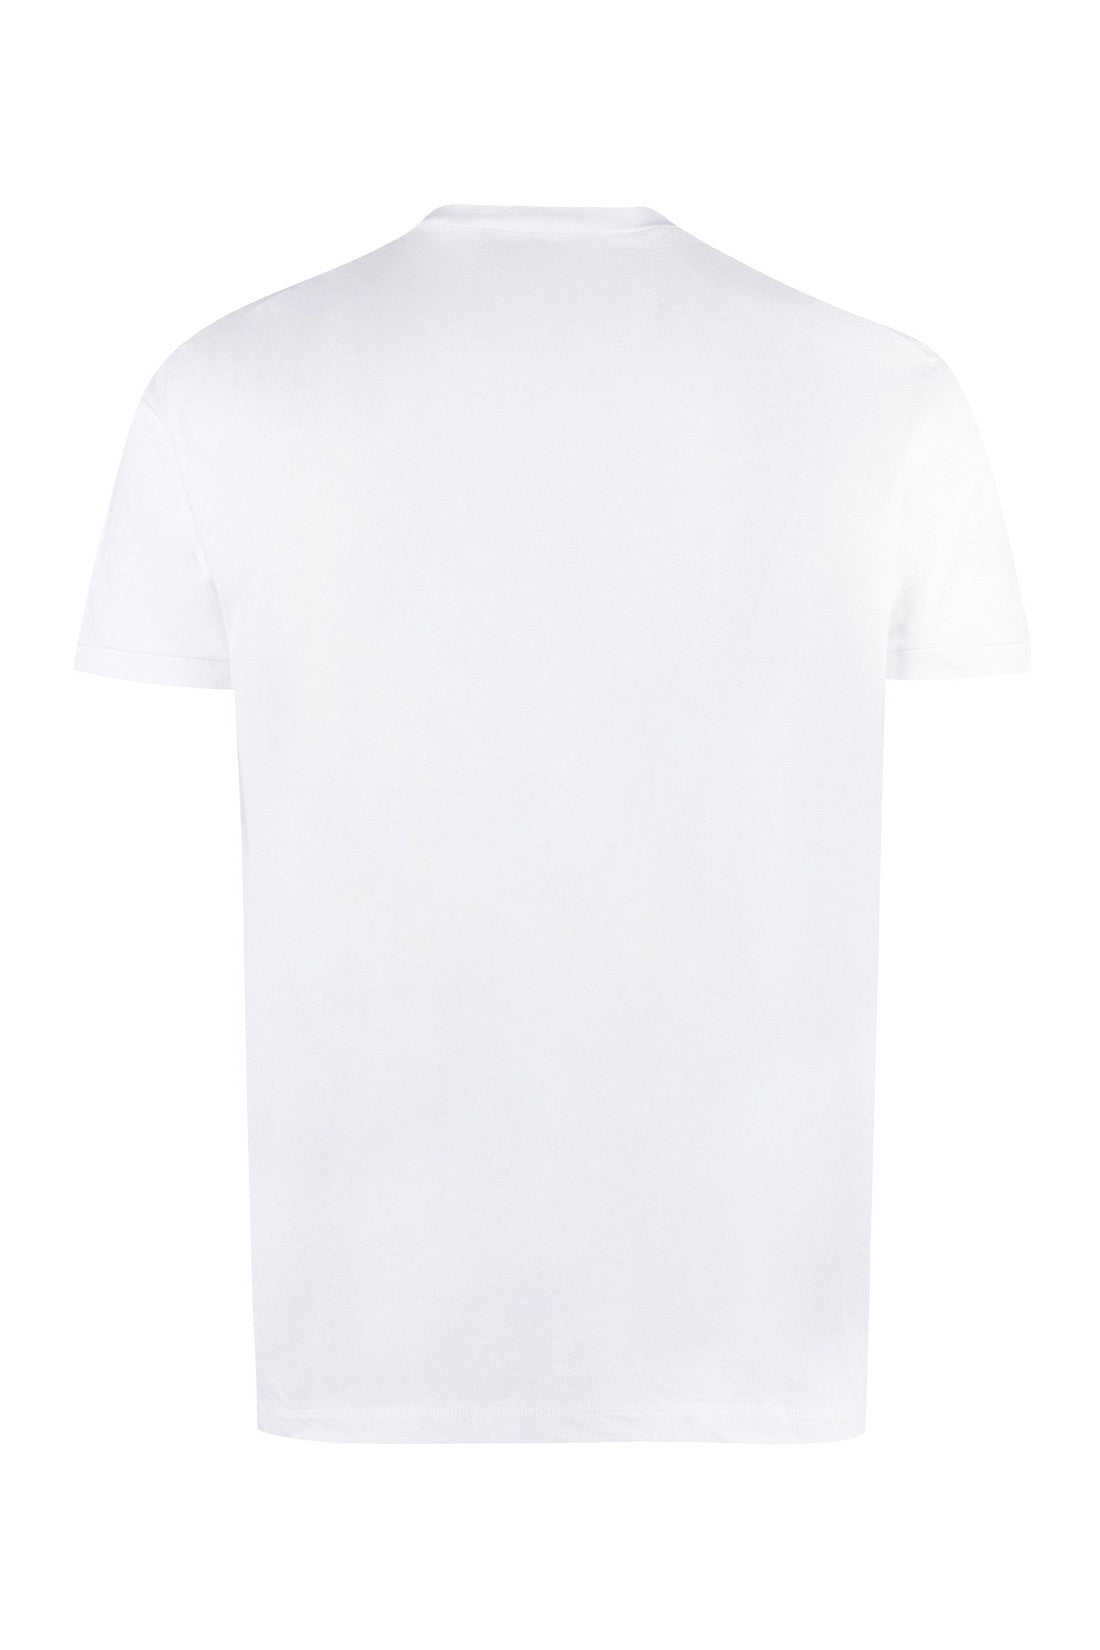 Dsquared2-OUTLET-SALE-Logo cotton t-shirt-ARCHIVIST